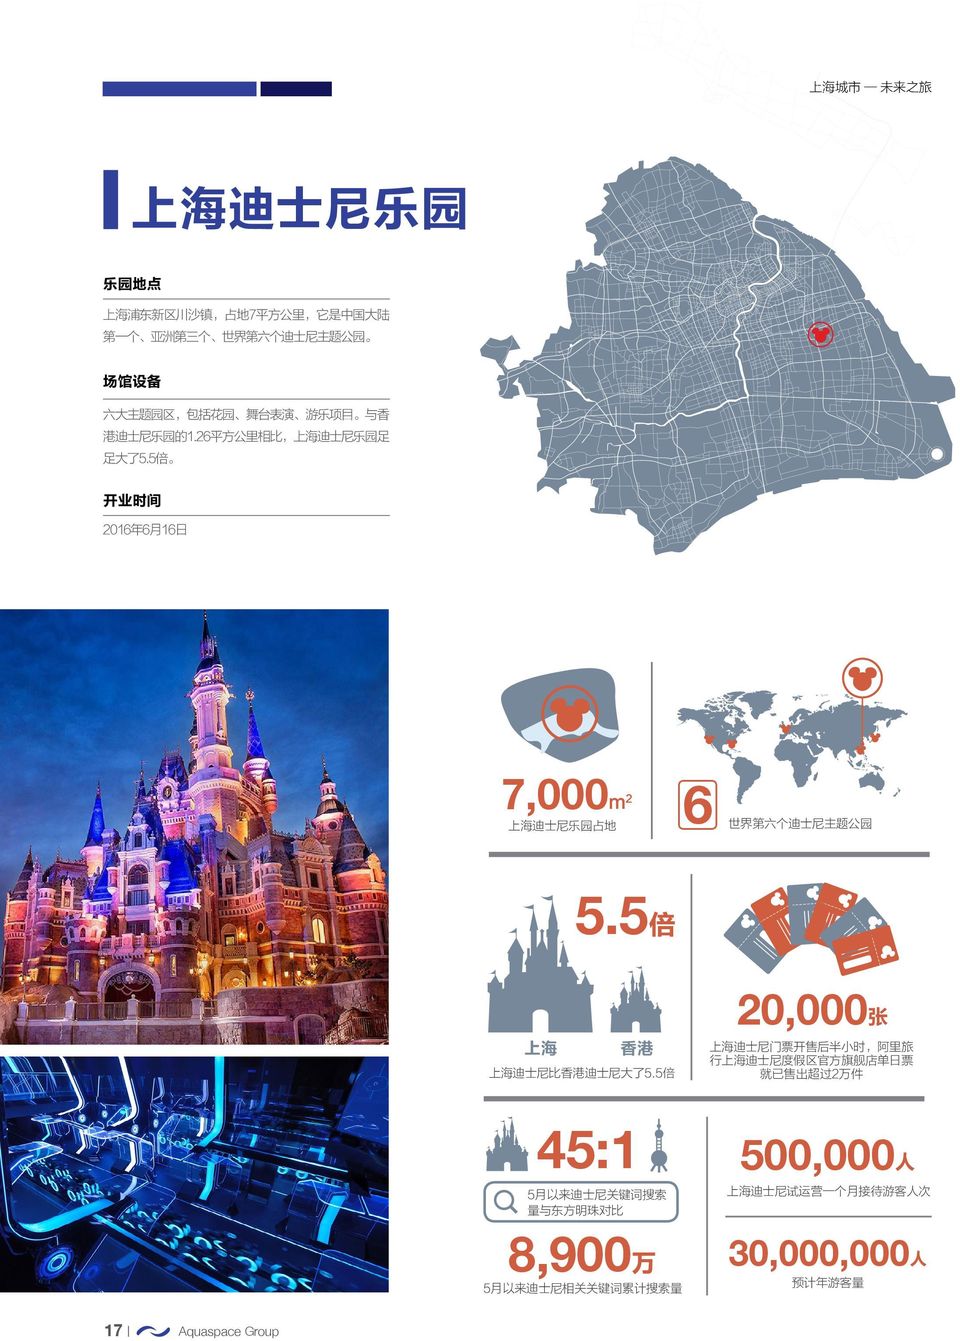 5 倍 开 业 时 间 2016 年 6 月 16 日 7,000m 2 上 海 迪 士 尼 乐 园 占 地 6 世 界 第 六 个 迪 士 尼 主 题 公 园 5.5 倍 上 海 香 港 上 海 迪 士 尼 比 香 港 迪 士 尼 大 了 5.